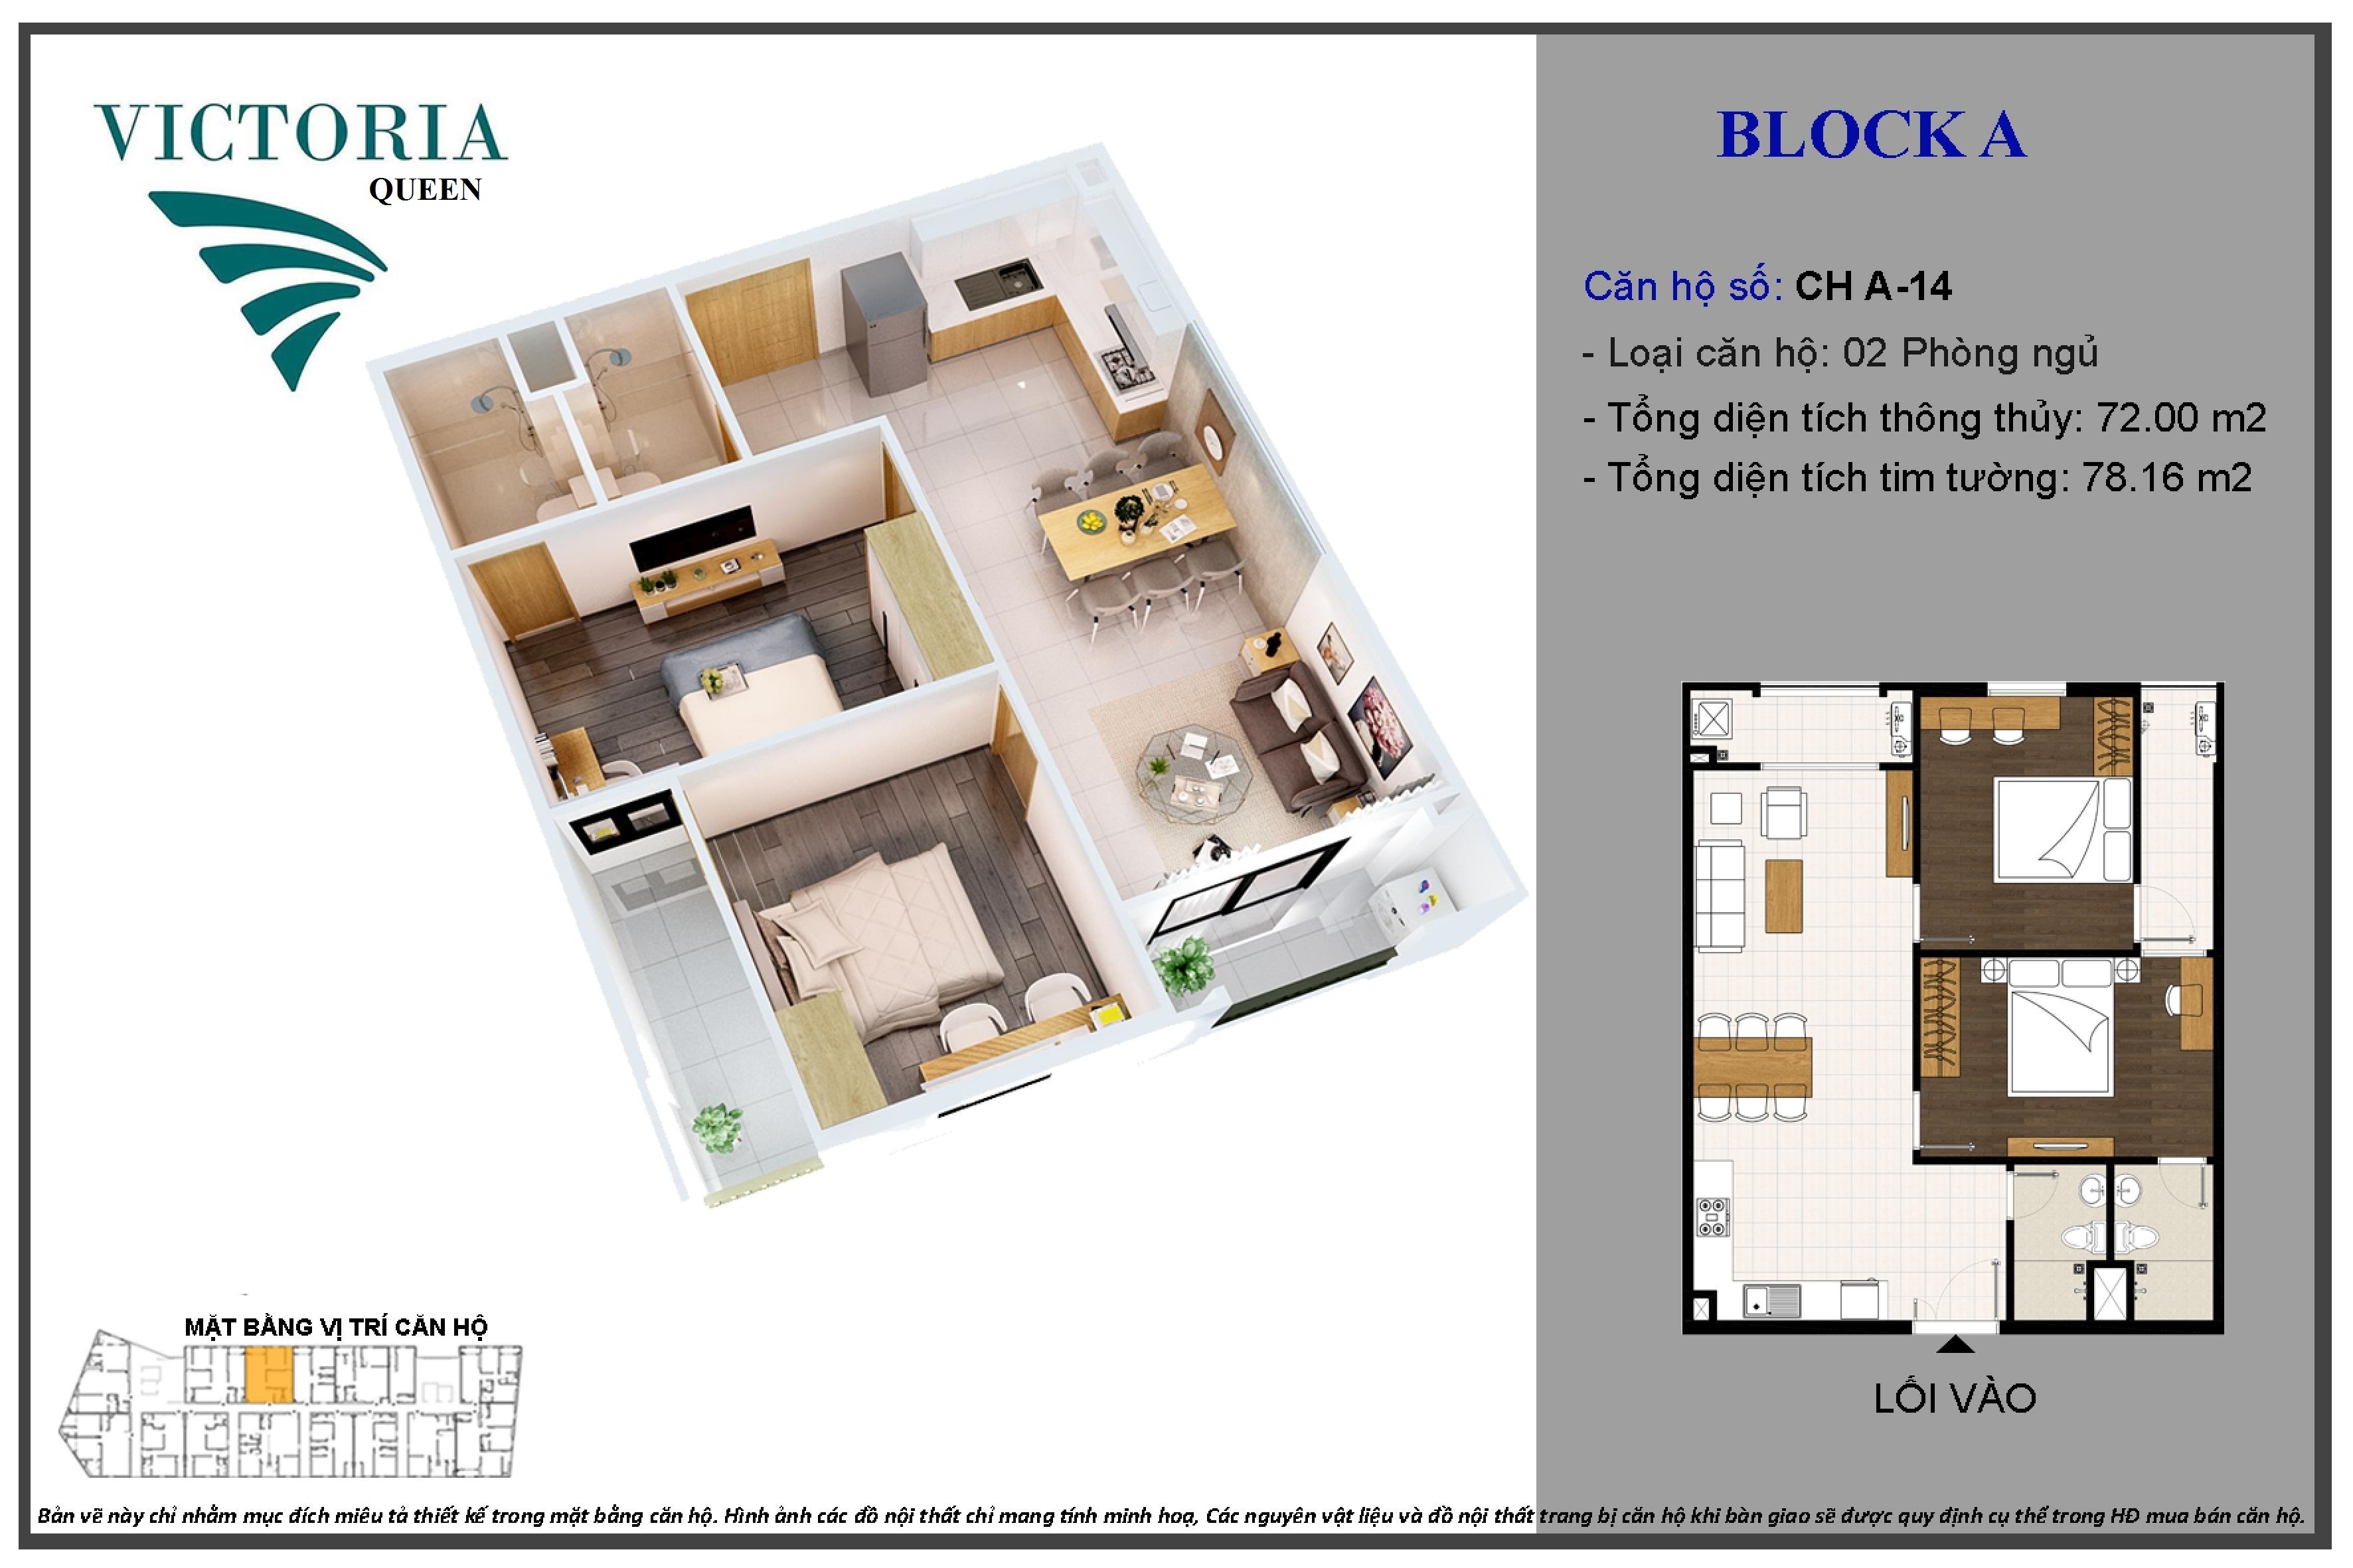 Mẫu thiết kế căn hộ 2PN dự án căn hộ Victoria Queen Bình Tân